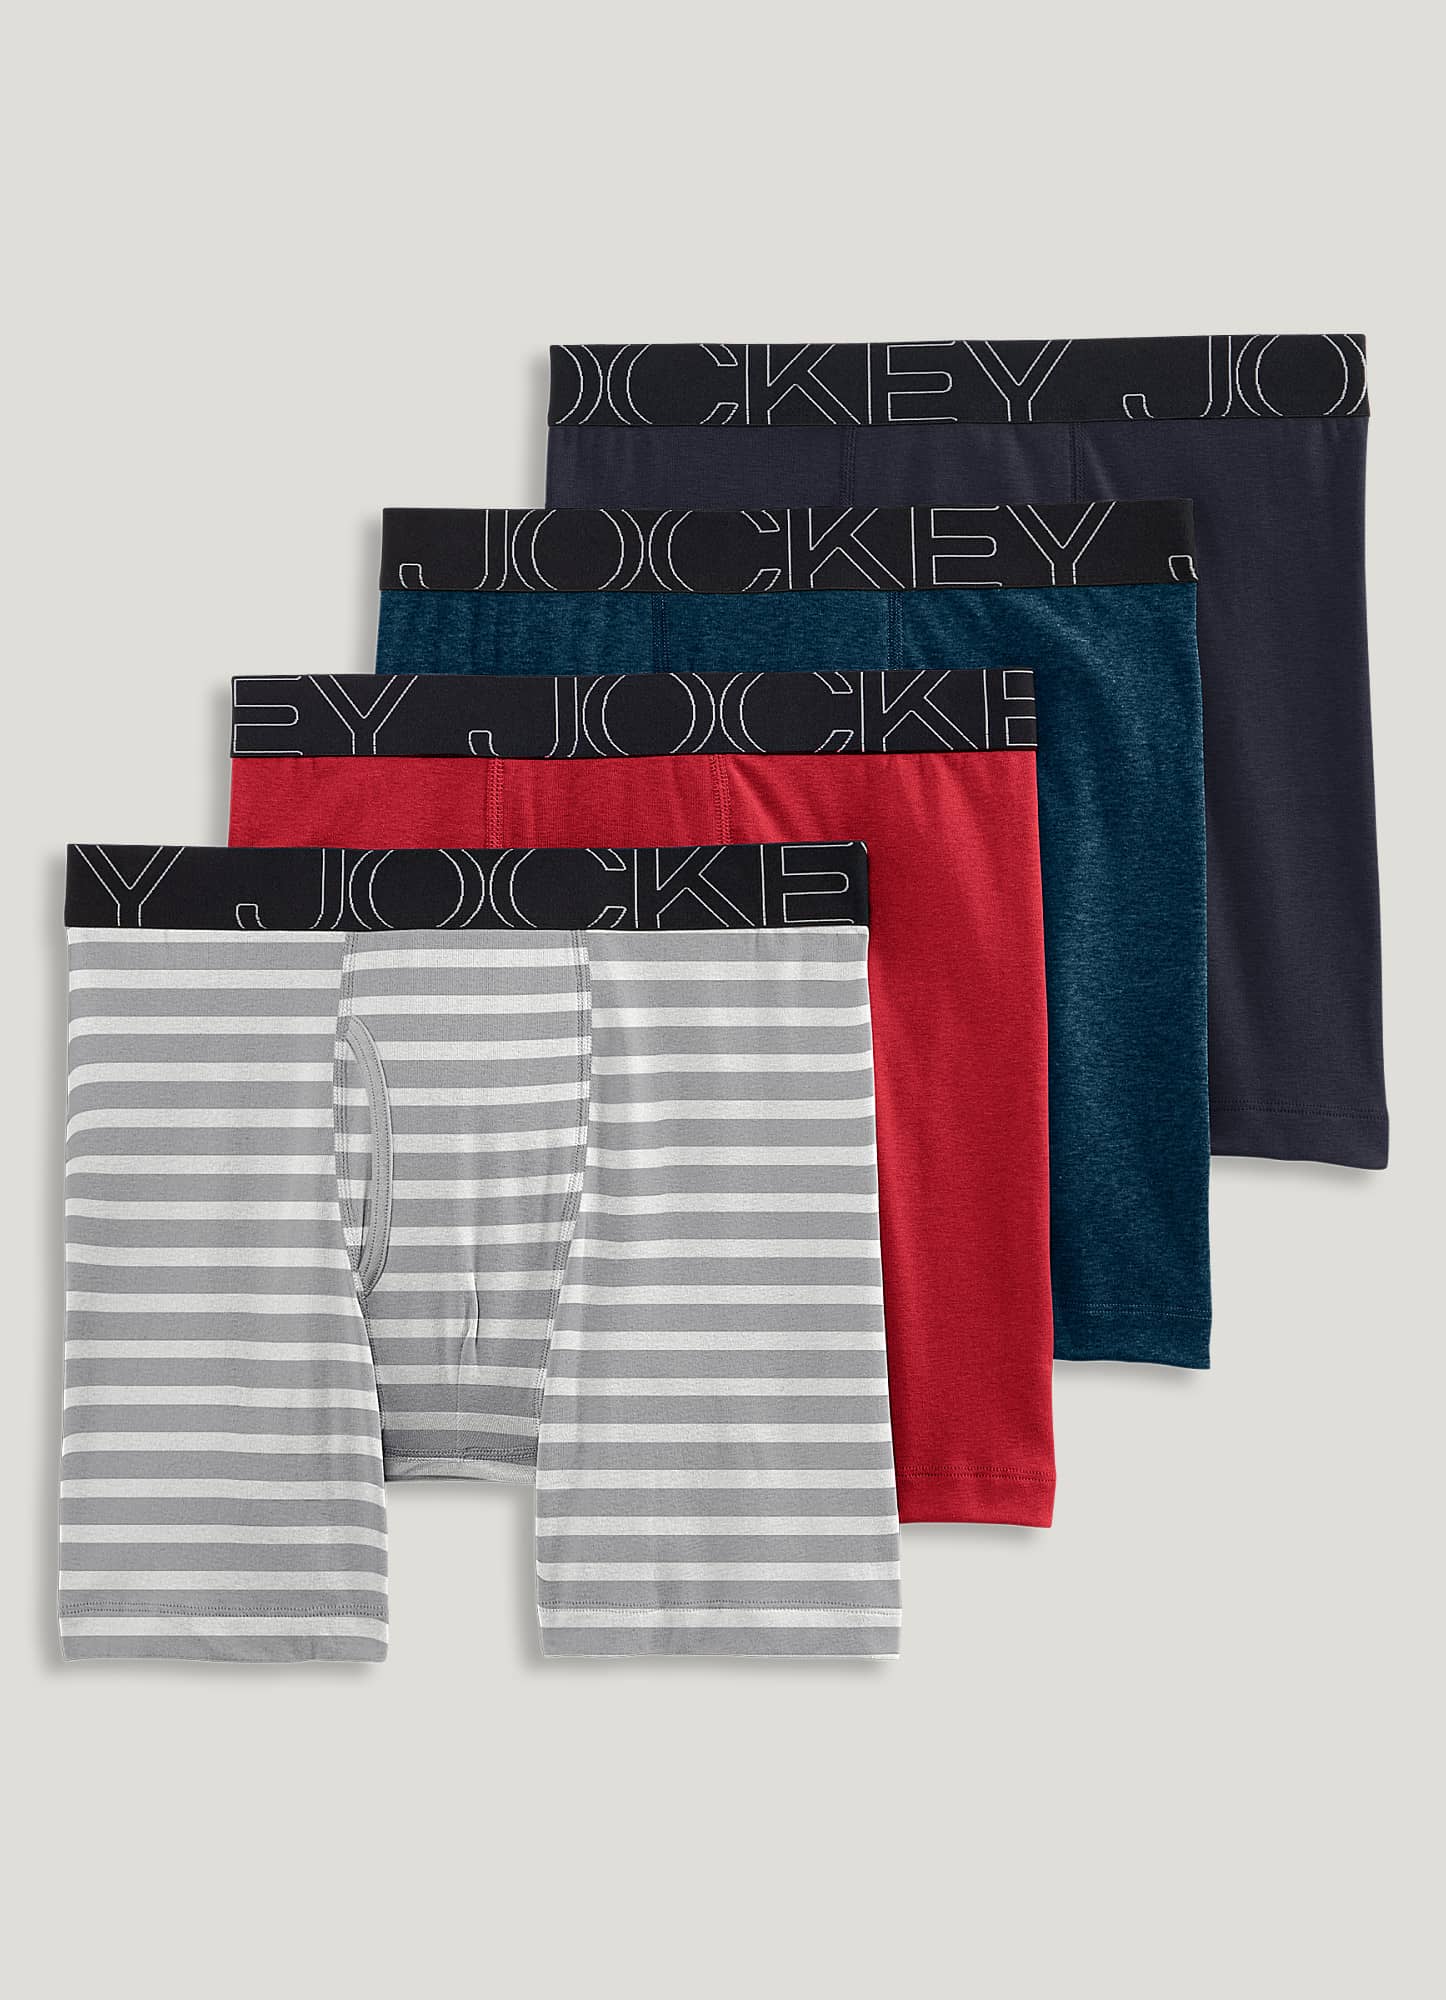 Jockey Men's Underwear ActiveStretch Brief - 4 Pack, Blue Chambray